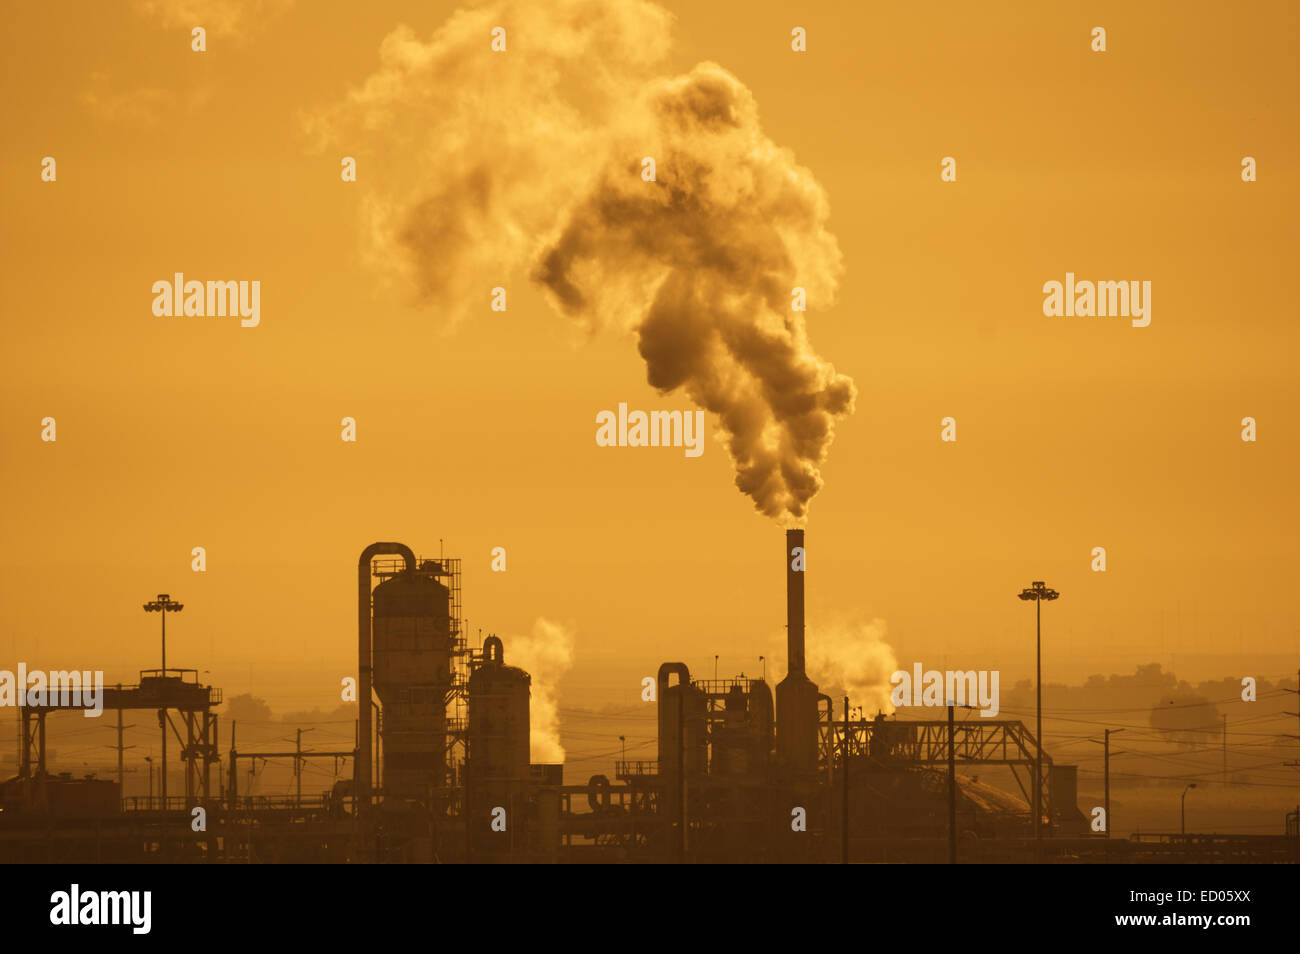 Industrieanlage mit Luftverschmutzung in einem dunstigen orangefarbenen Himmel Stockfoto